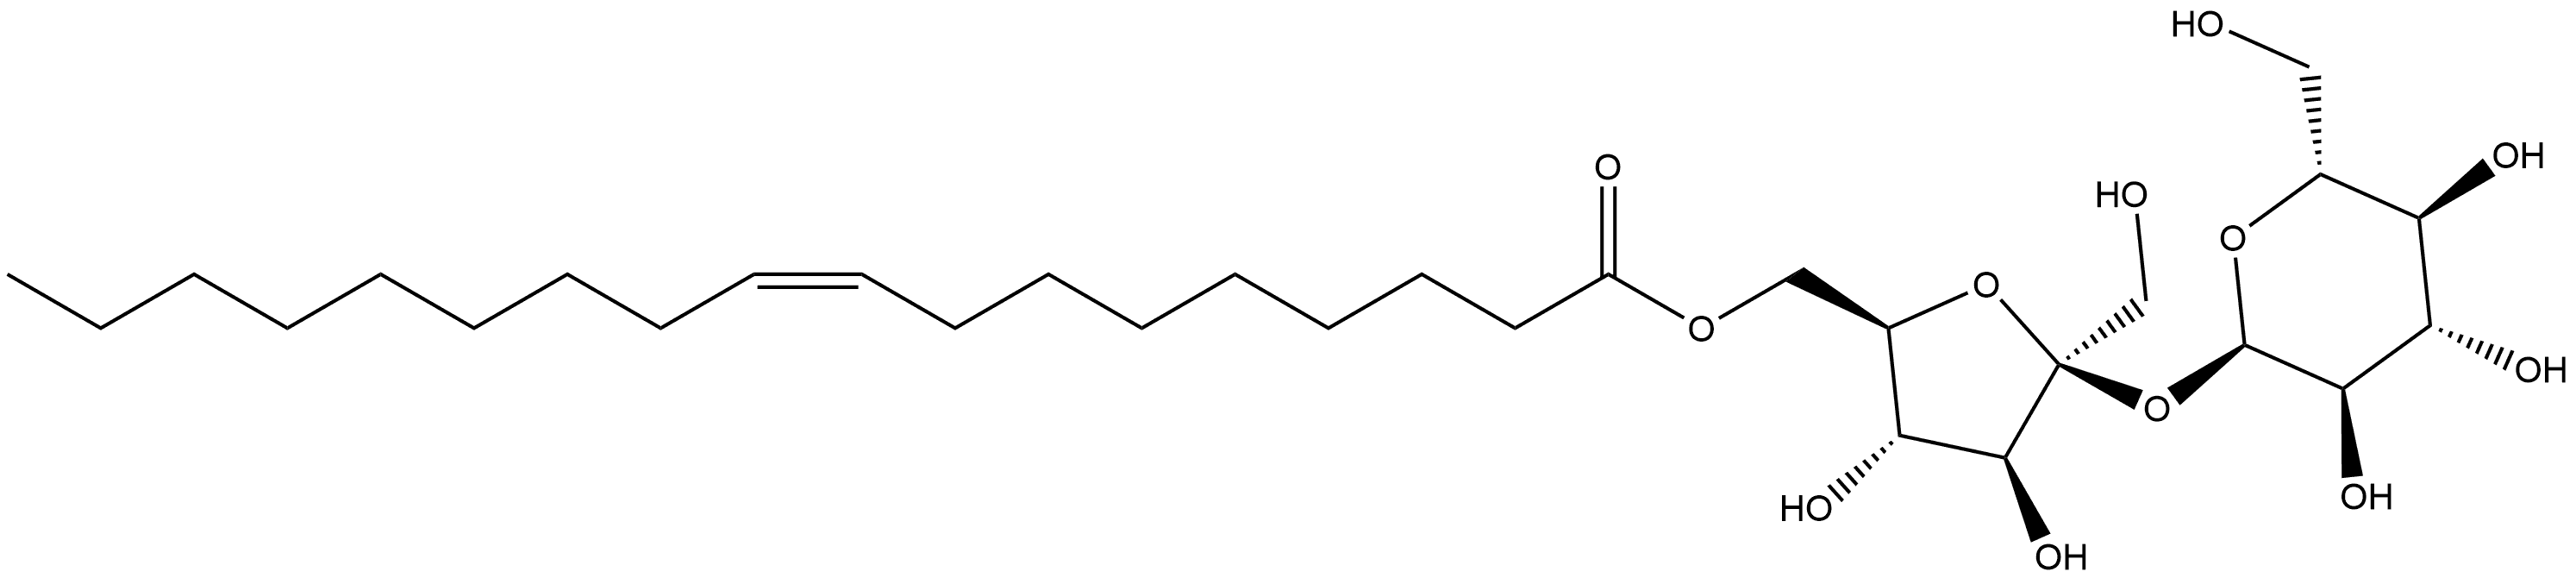 731854-16-3 α-D-Glucopyranoside, 6-O-[(9Z)-1-oxo-9-octadecen-1-yl]-β-D-fructofuranosyl